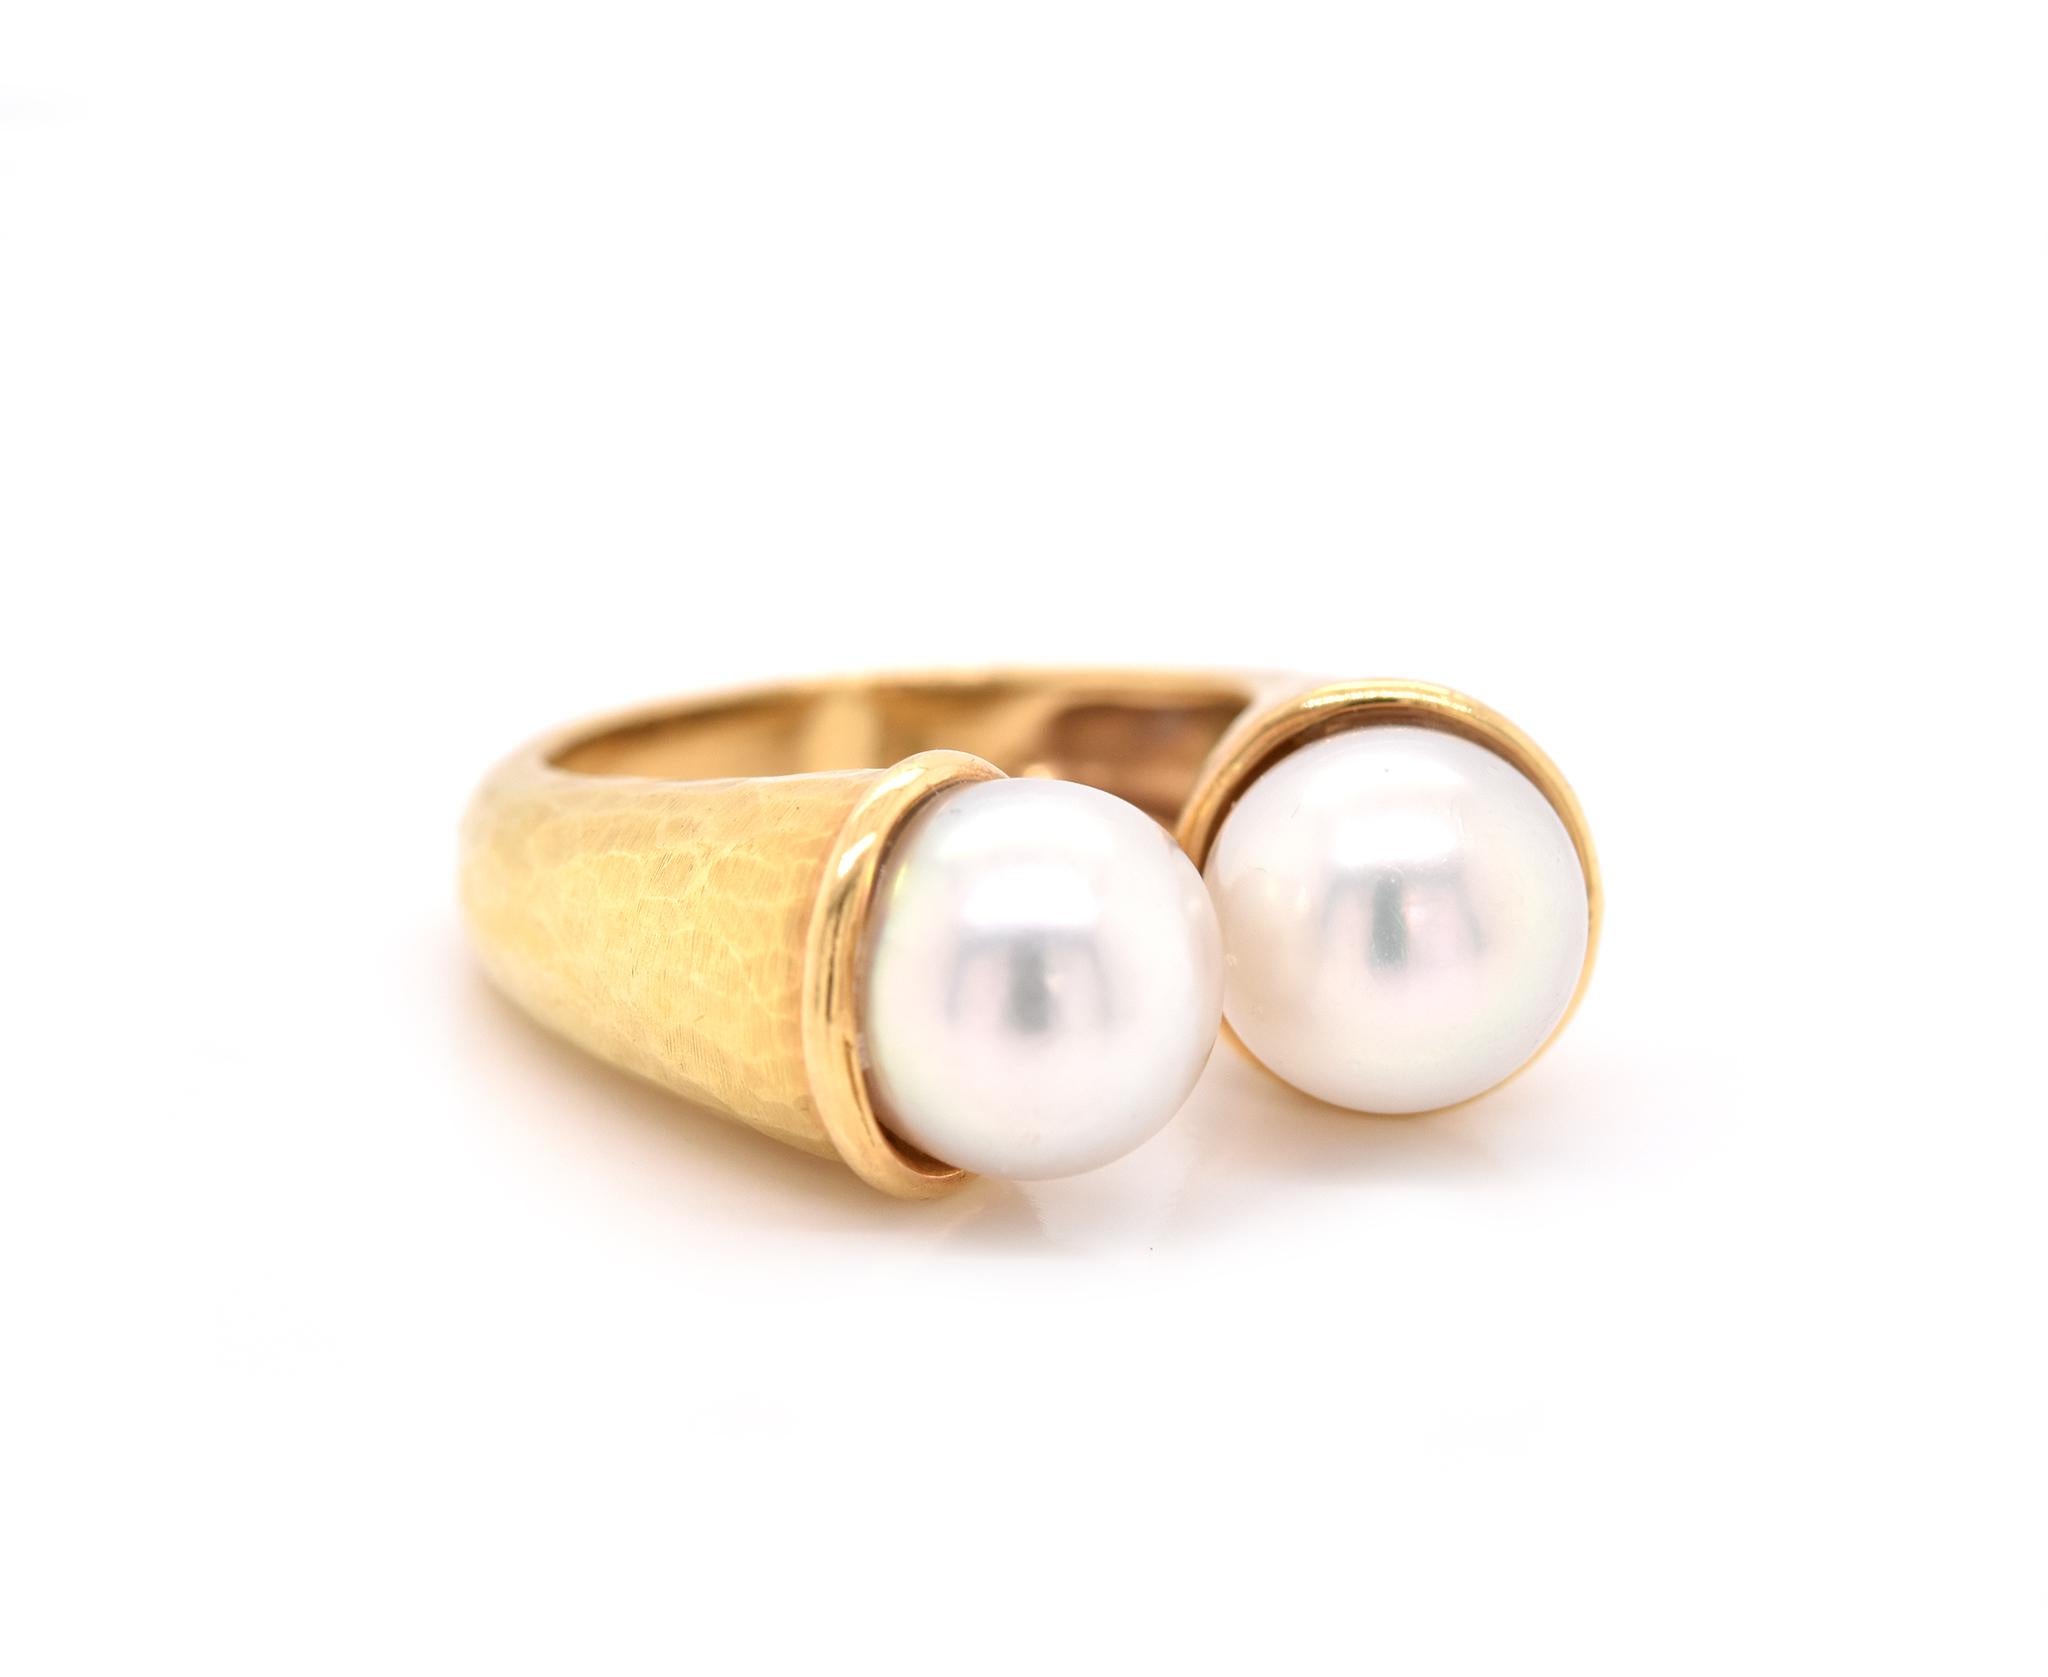 Matériau : or jaune 18k
Perle : 2 perles de culture = 8.15mm
Taille de la bague : 5 (veuillez prévoir deux jours de livraison supplémentaires pour les demandes de taille)
Dimensions : l'anneau mesure 22.00mm x 27.15mm
Poids : 9,19 grammes